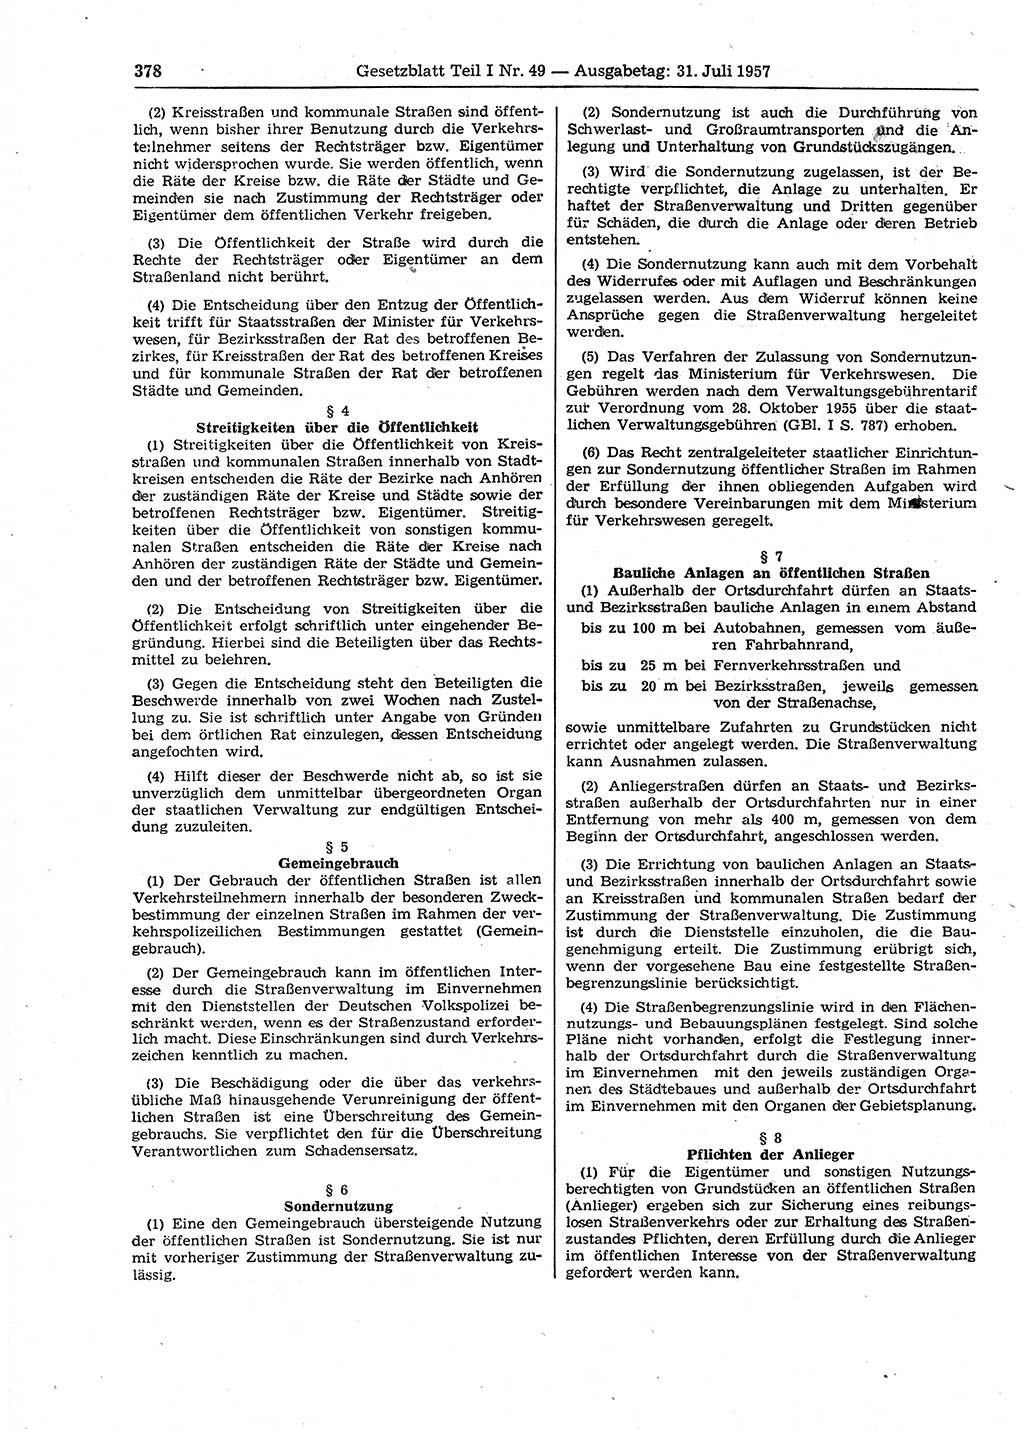 Gesetzblatt (GBl.) der Deutschen Demokratischen Republik (DDR) Teil Ⅰ 1957, Seite 378 (GBl. DDR Ⅰ 1957, S. 378)